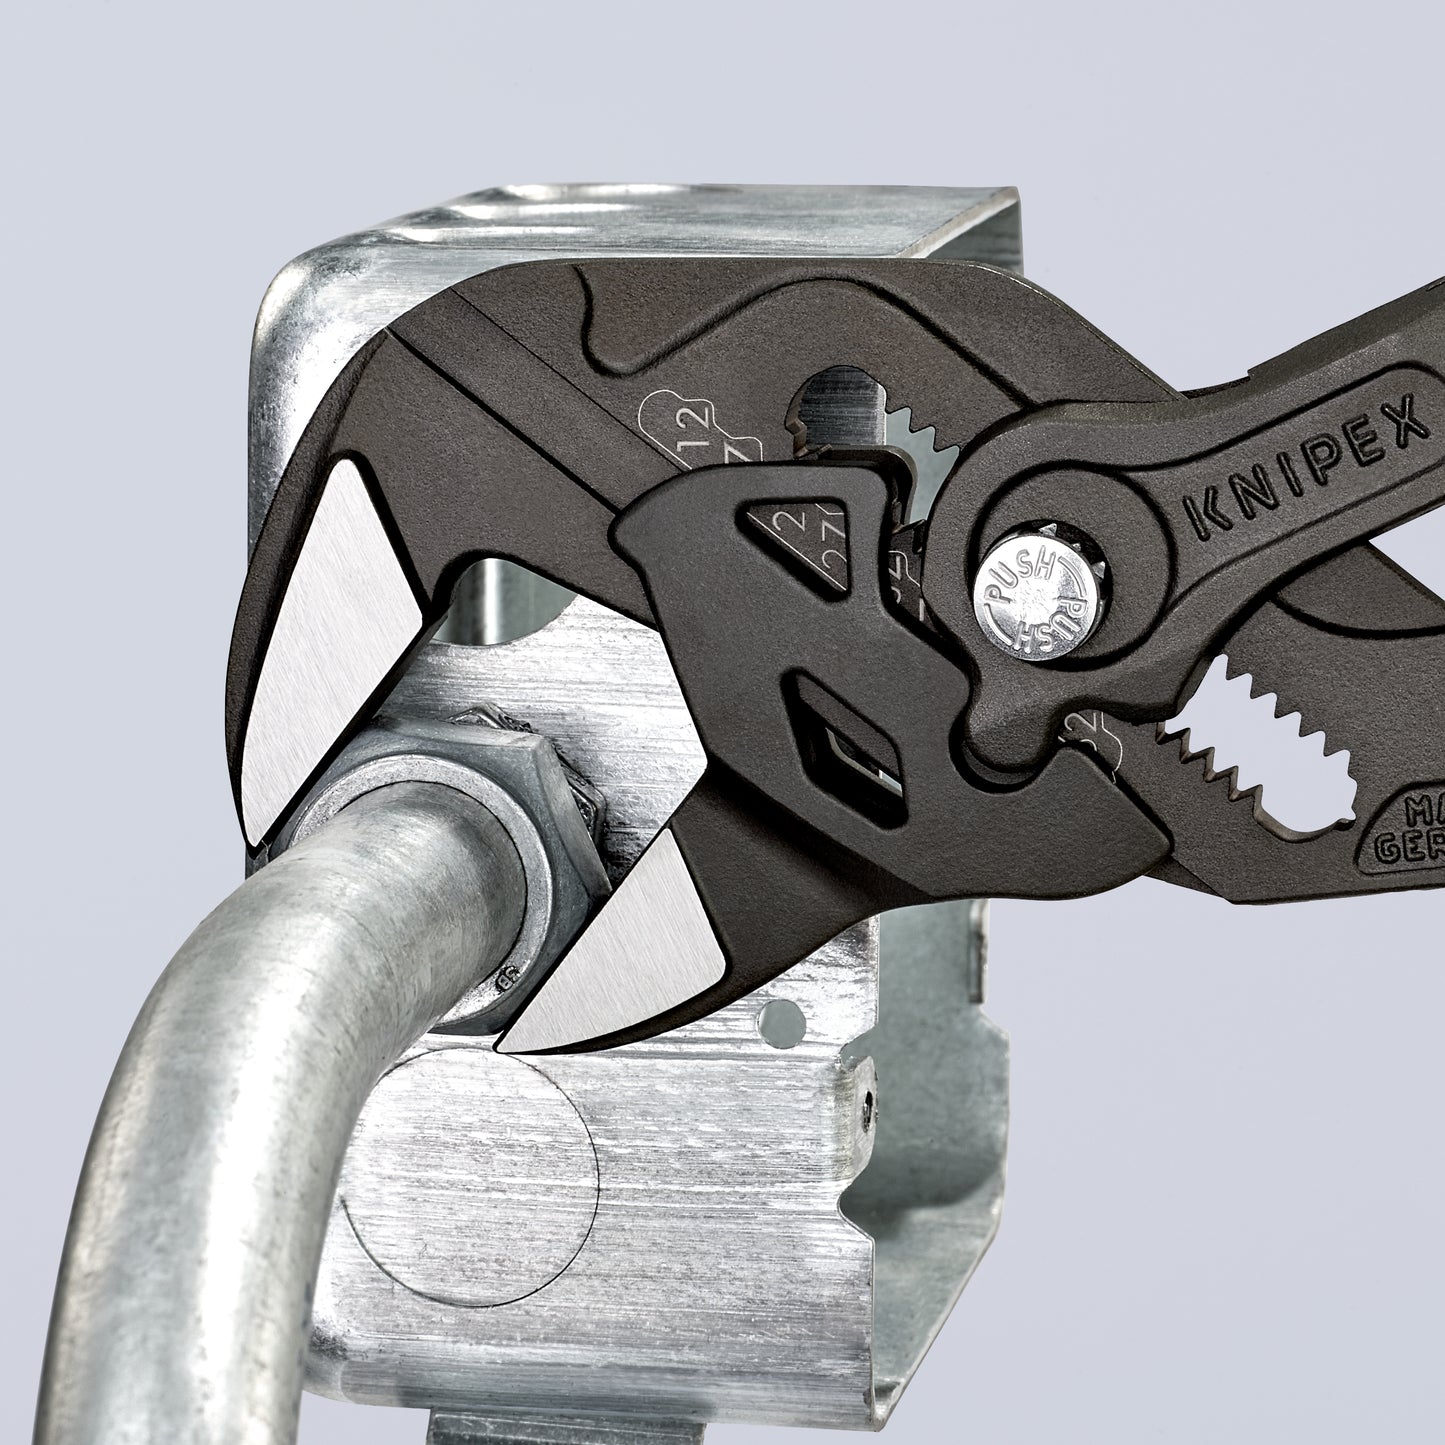 Knipex 86 01 250 - Pince clé Knipex 250 mm avec poignées PVC et finition noir noir